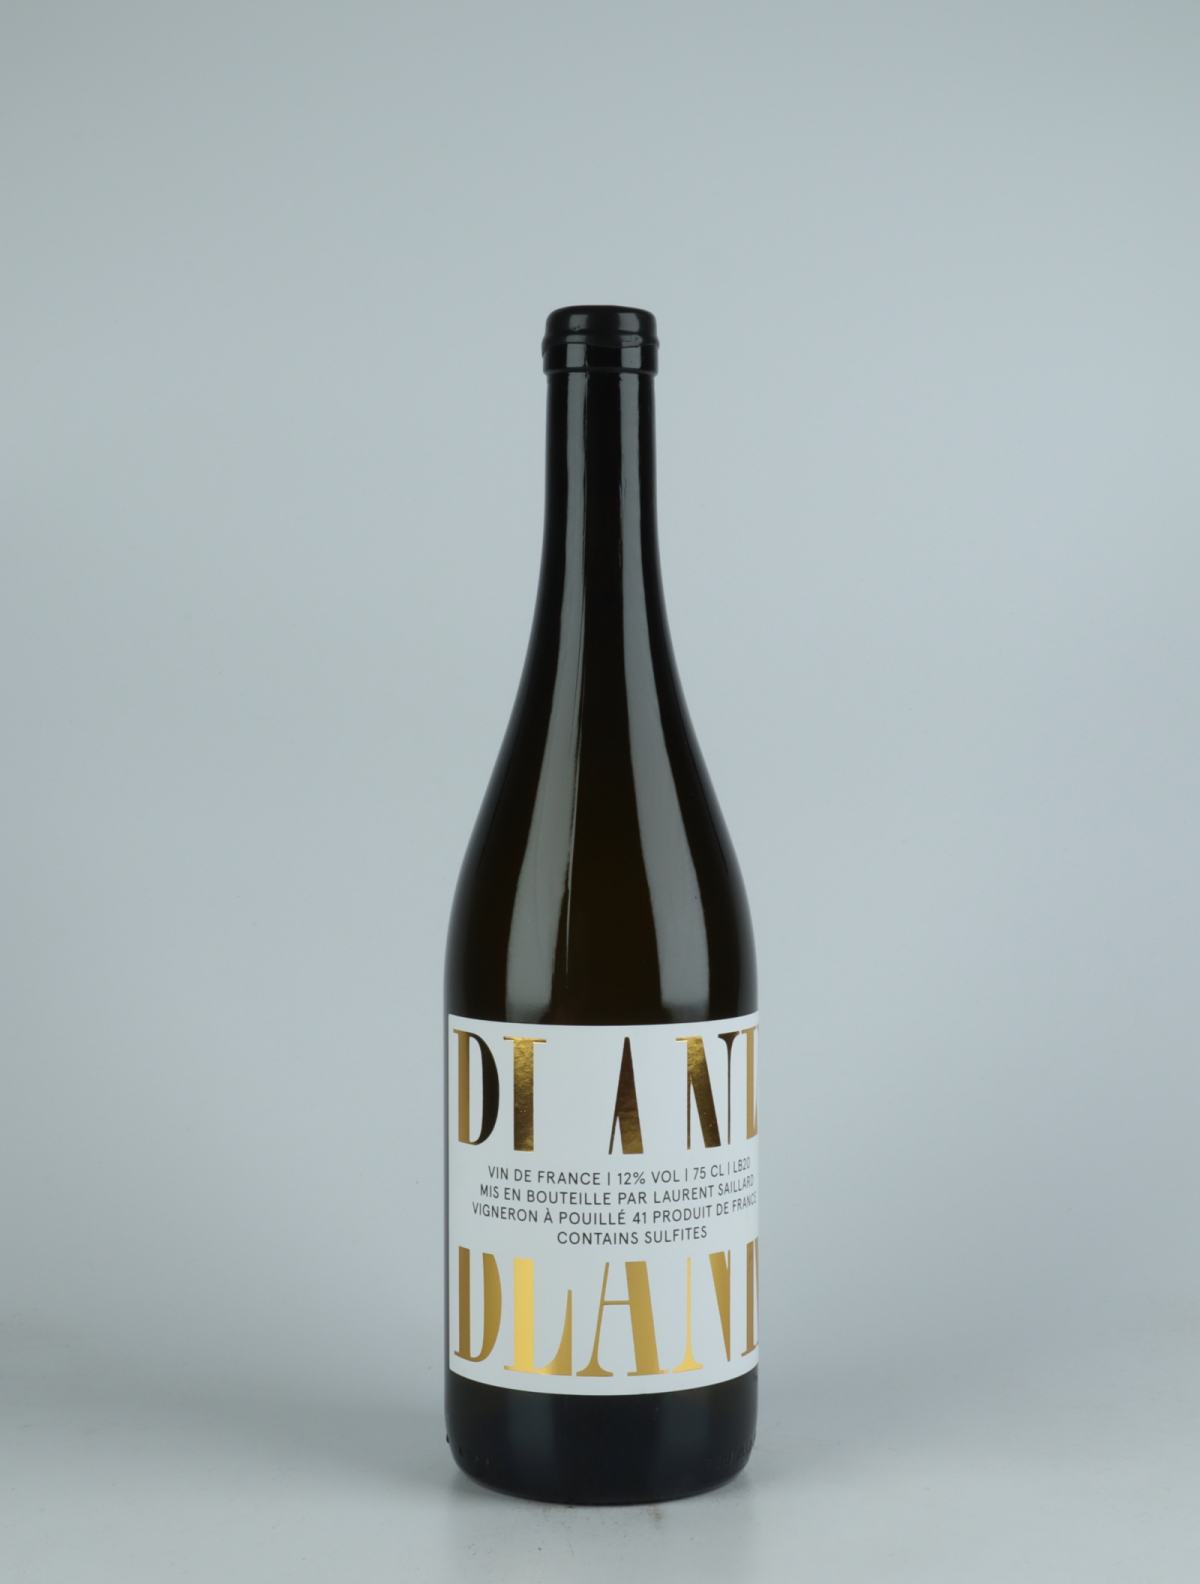 A bottle 2020 Blank White wine from Laurent Saillard, Loire in France